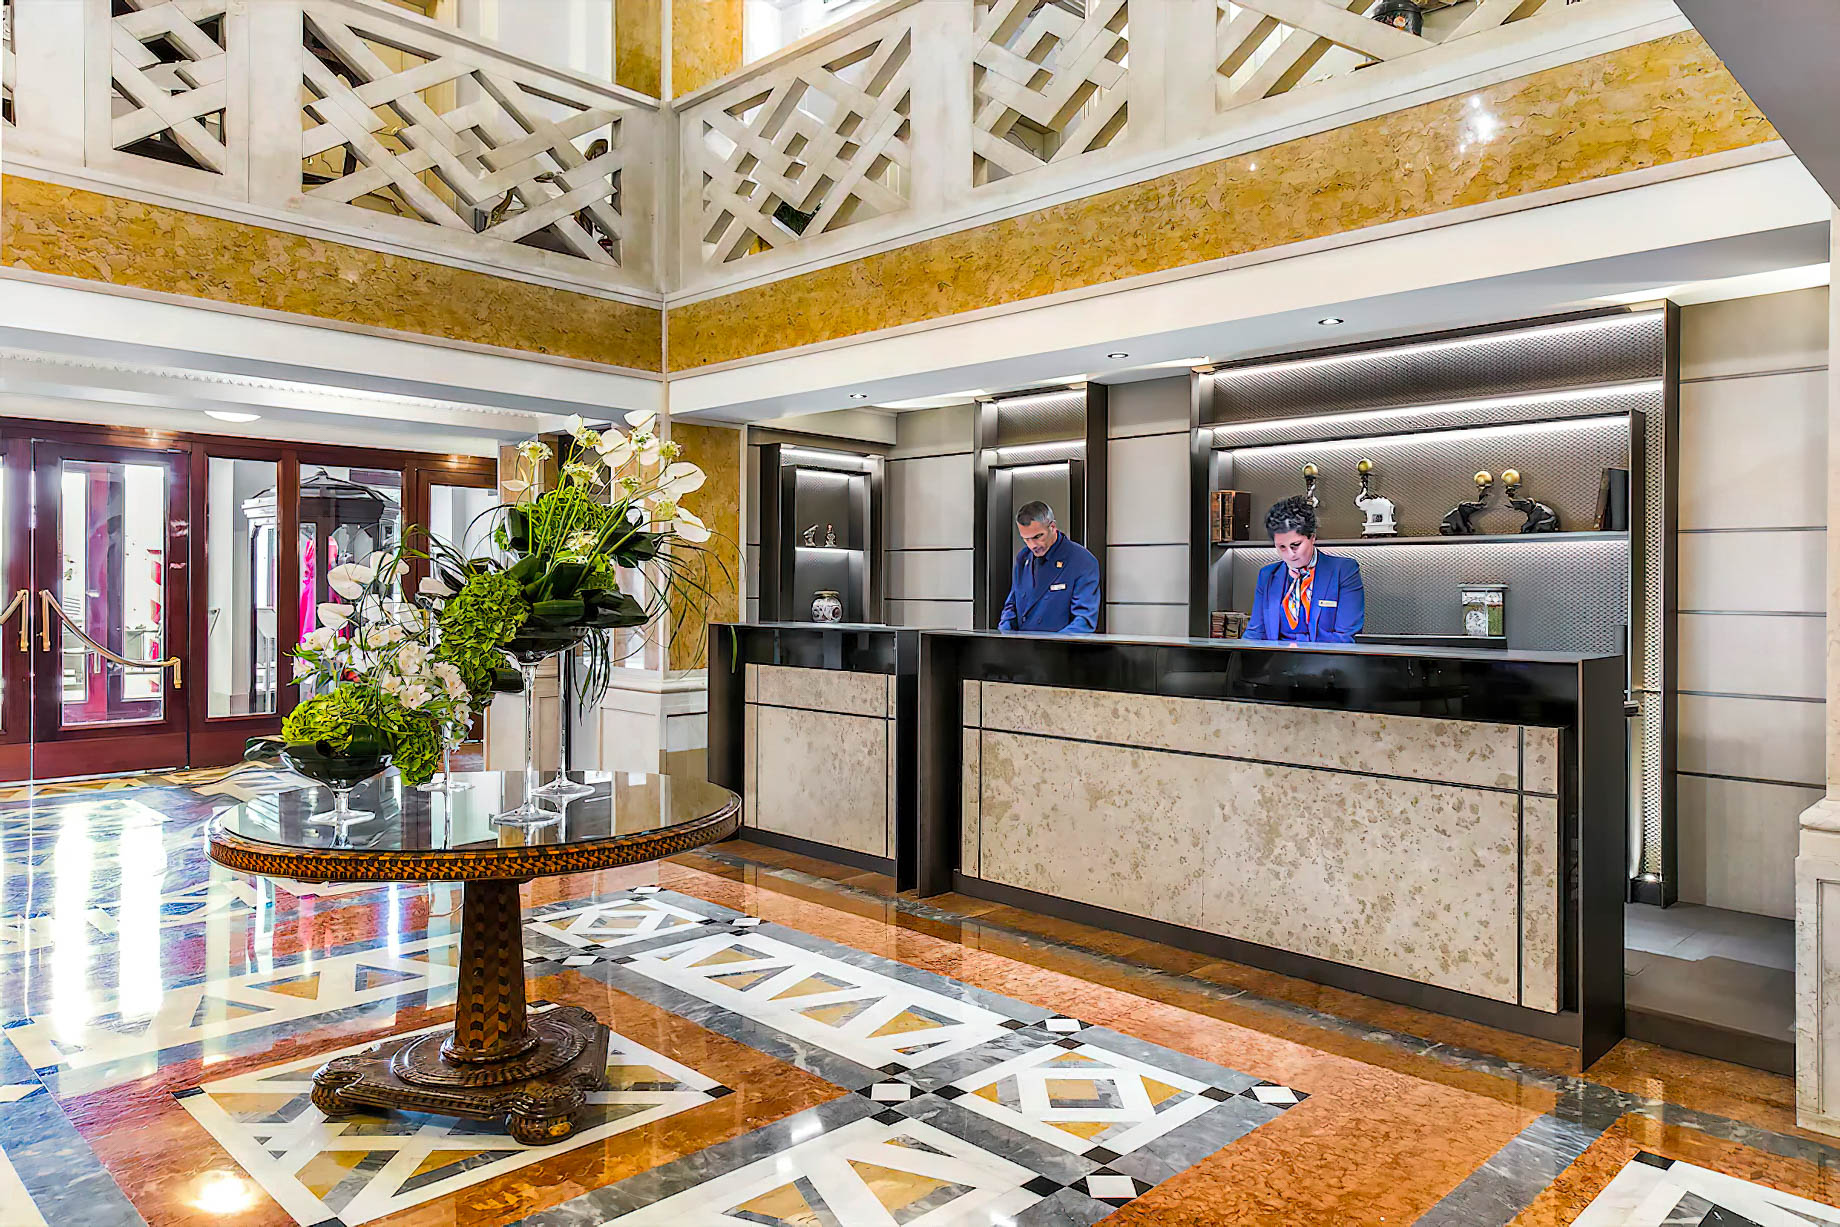 Baglioni Hotel Luna, Venezia - Venice, Italy - Lobby Reception